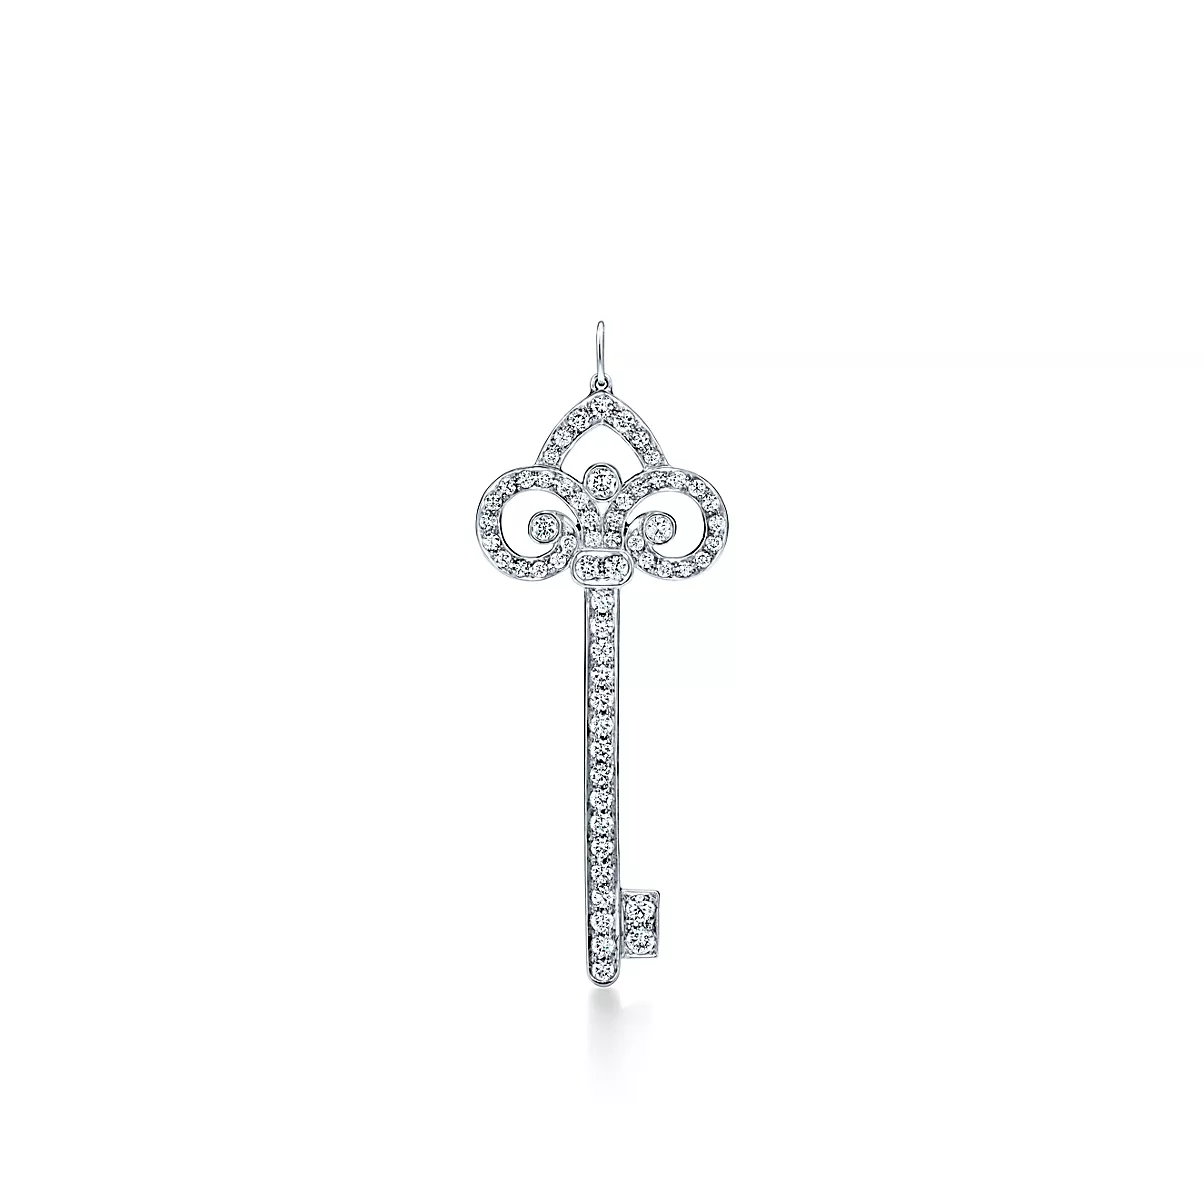 Tiffany Keys Key 플래티늄 라운드 브릴리언트 다이아몬드 One Scale